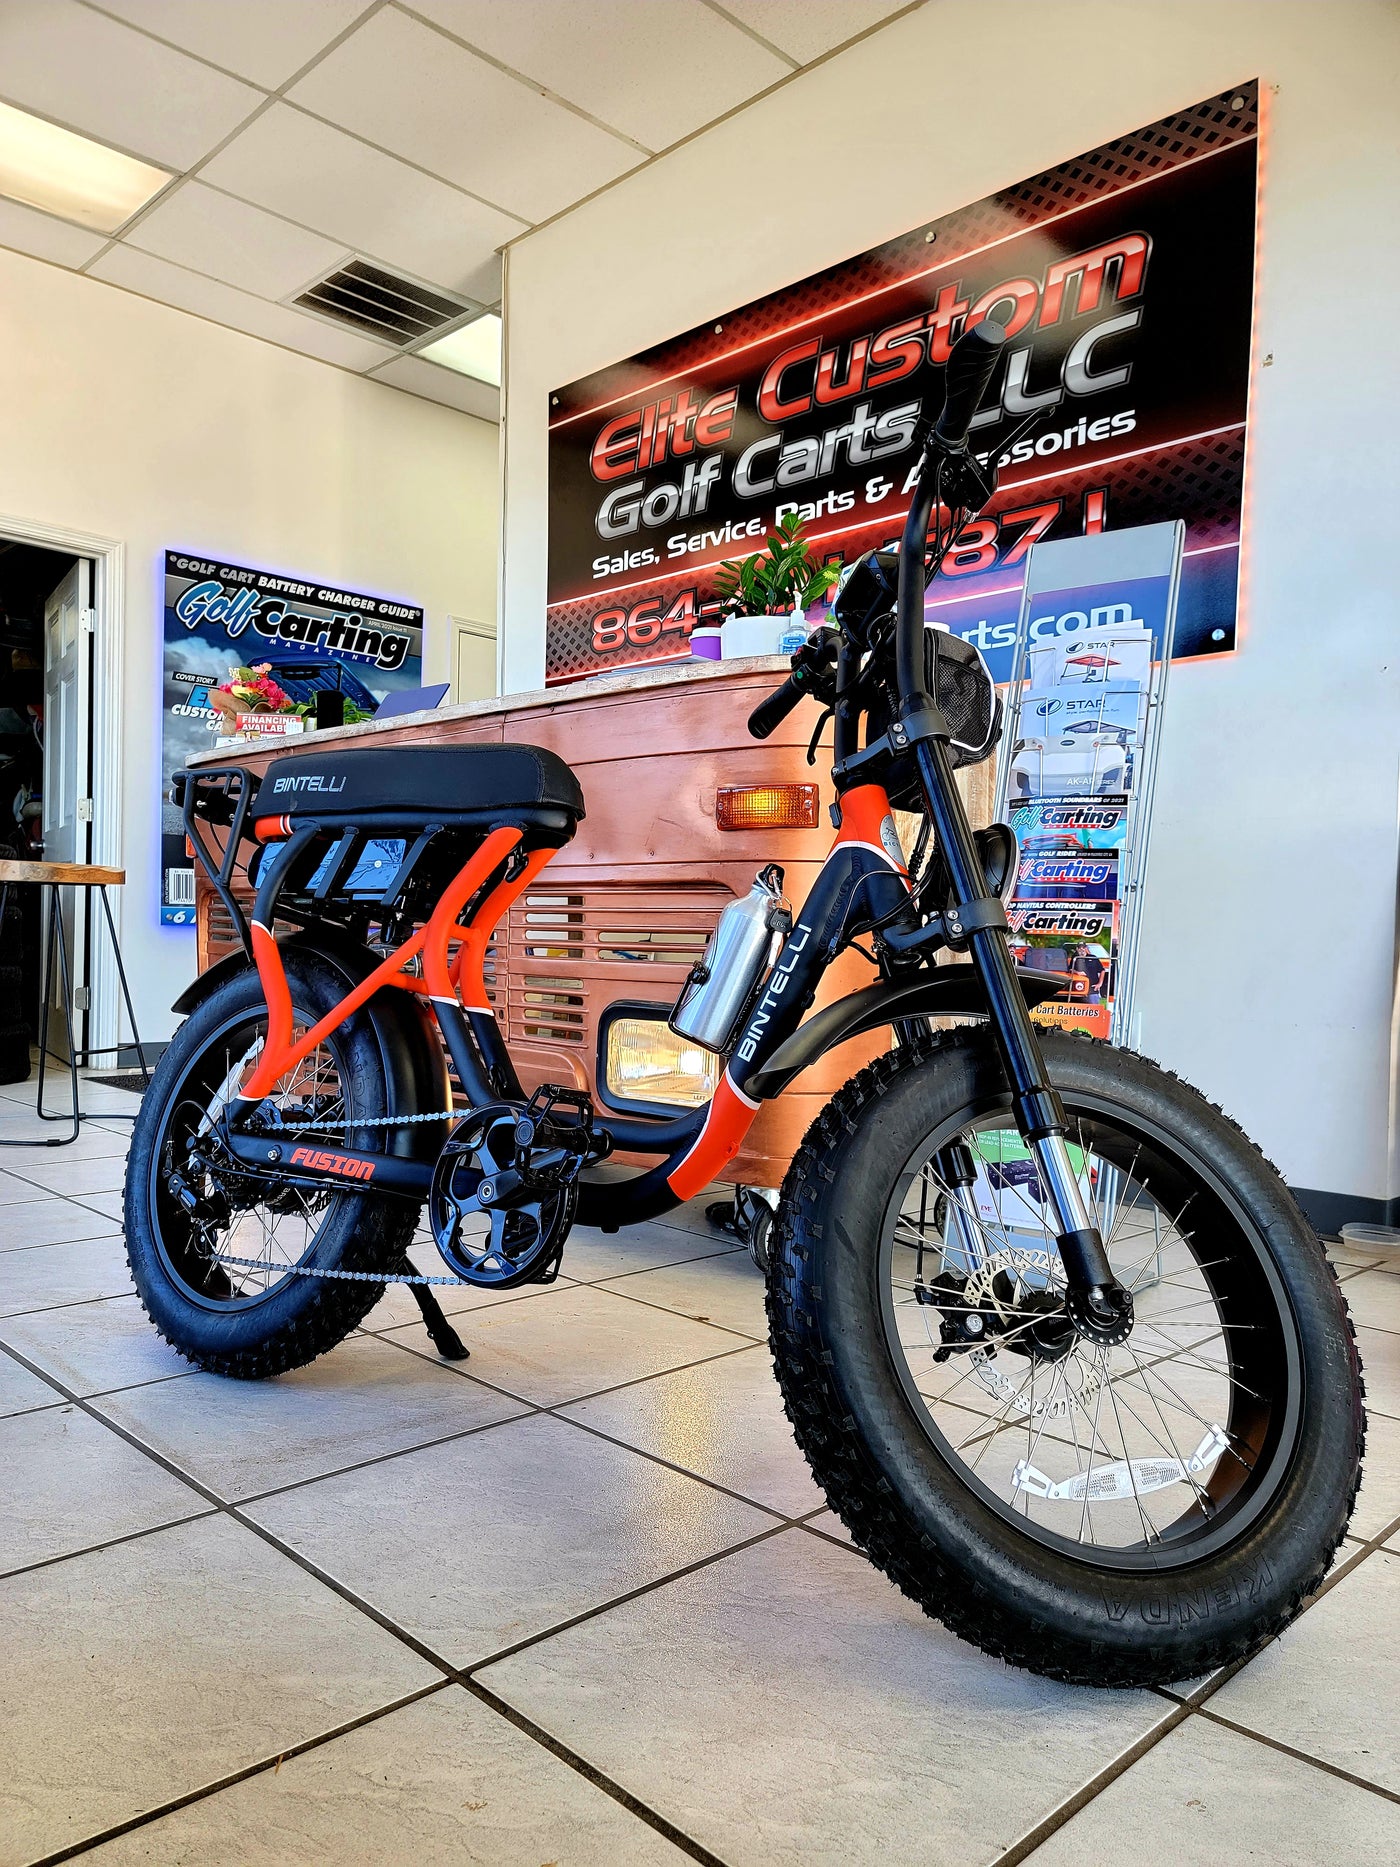 Bintelli Fusion Hybrid Electric Bike Orange / Black